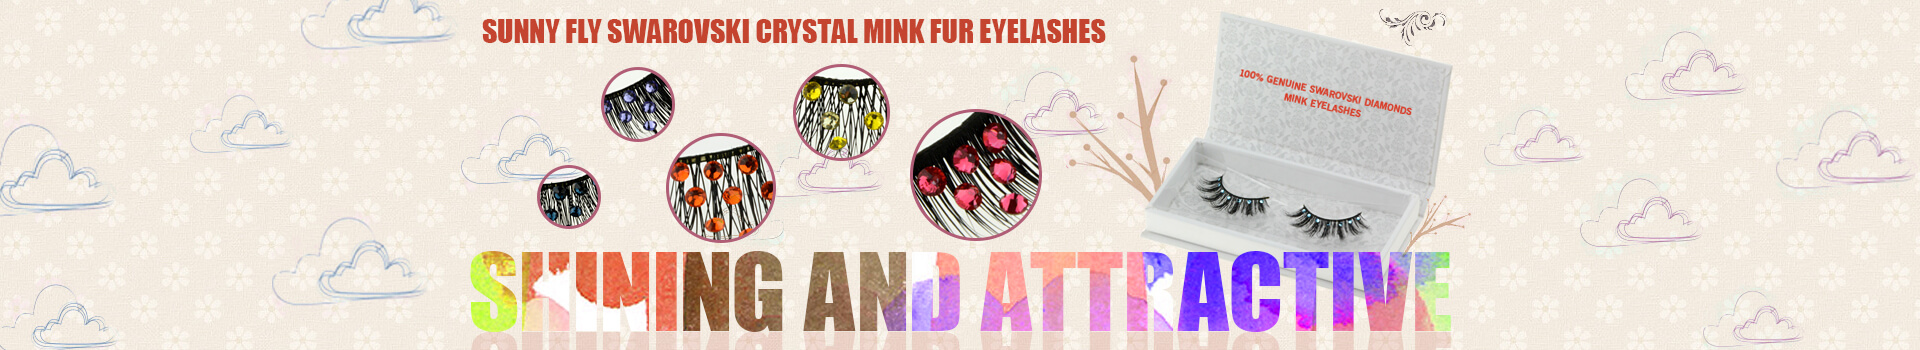 Swarovski Crystal Mink Fur Eyelashes MS19